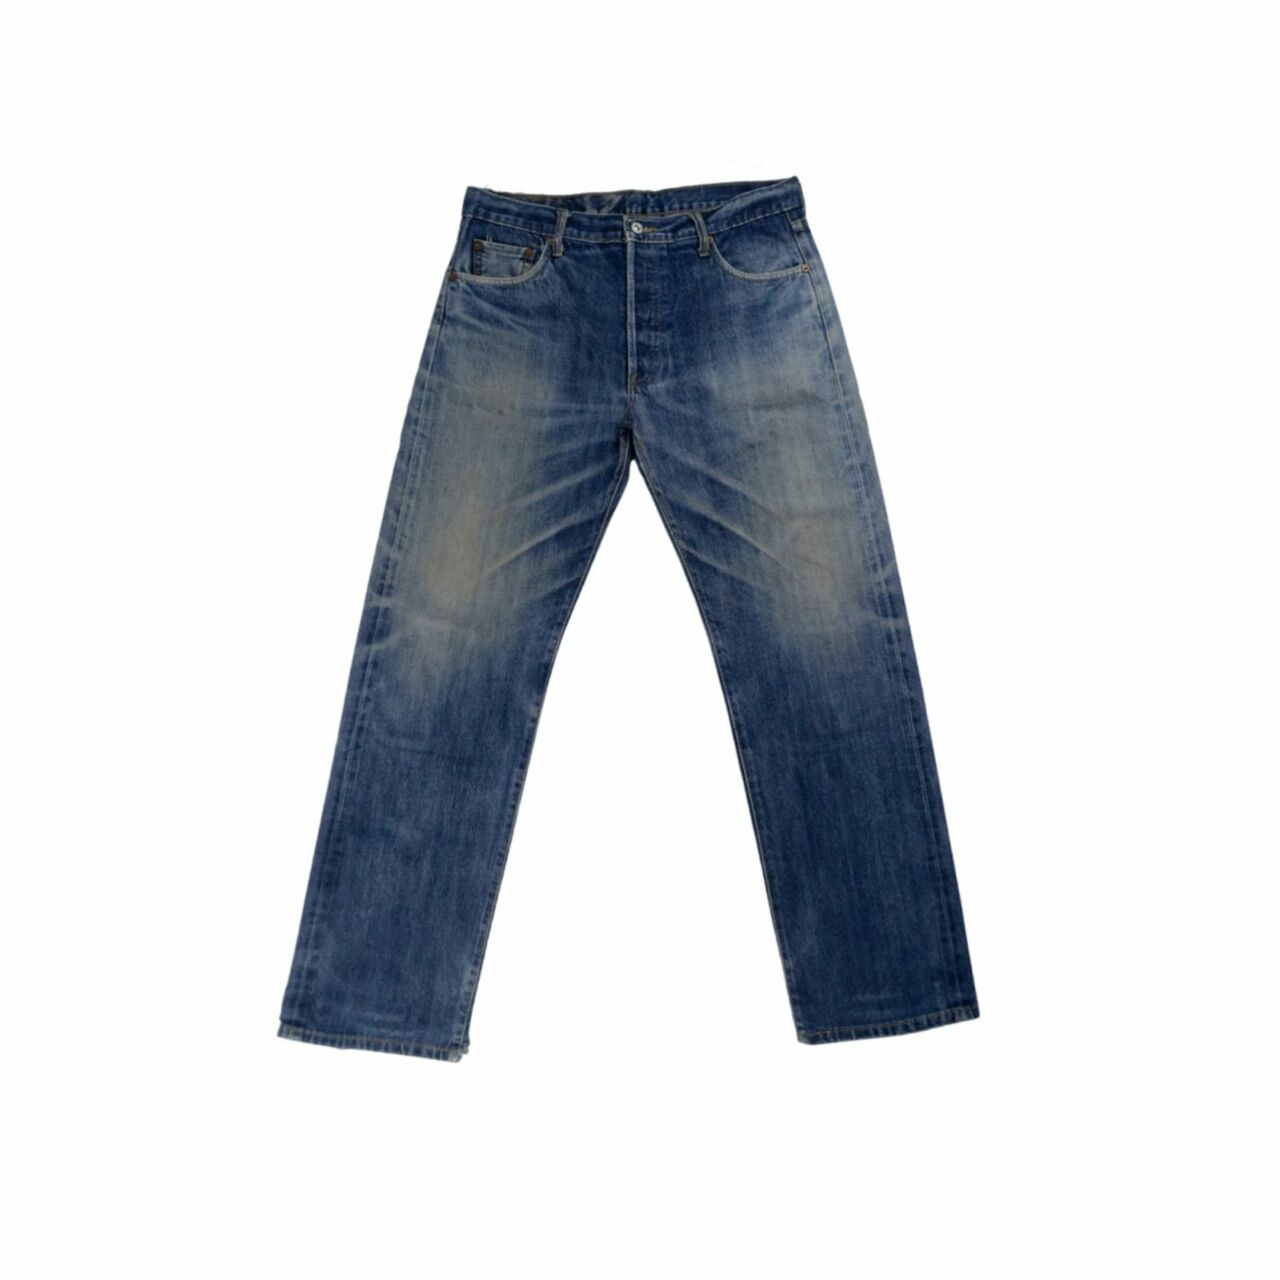 Levi's Blue Denim 501 Long Pants